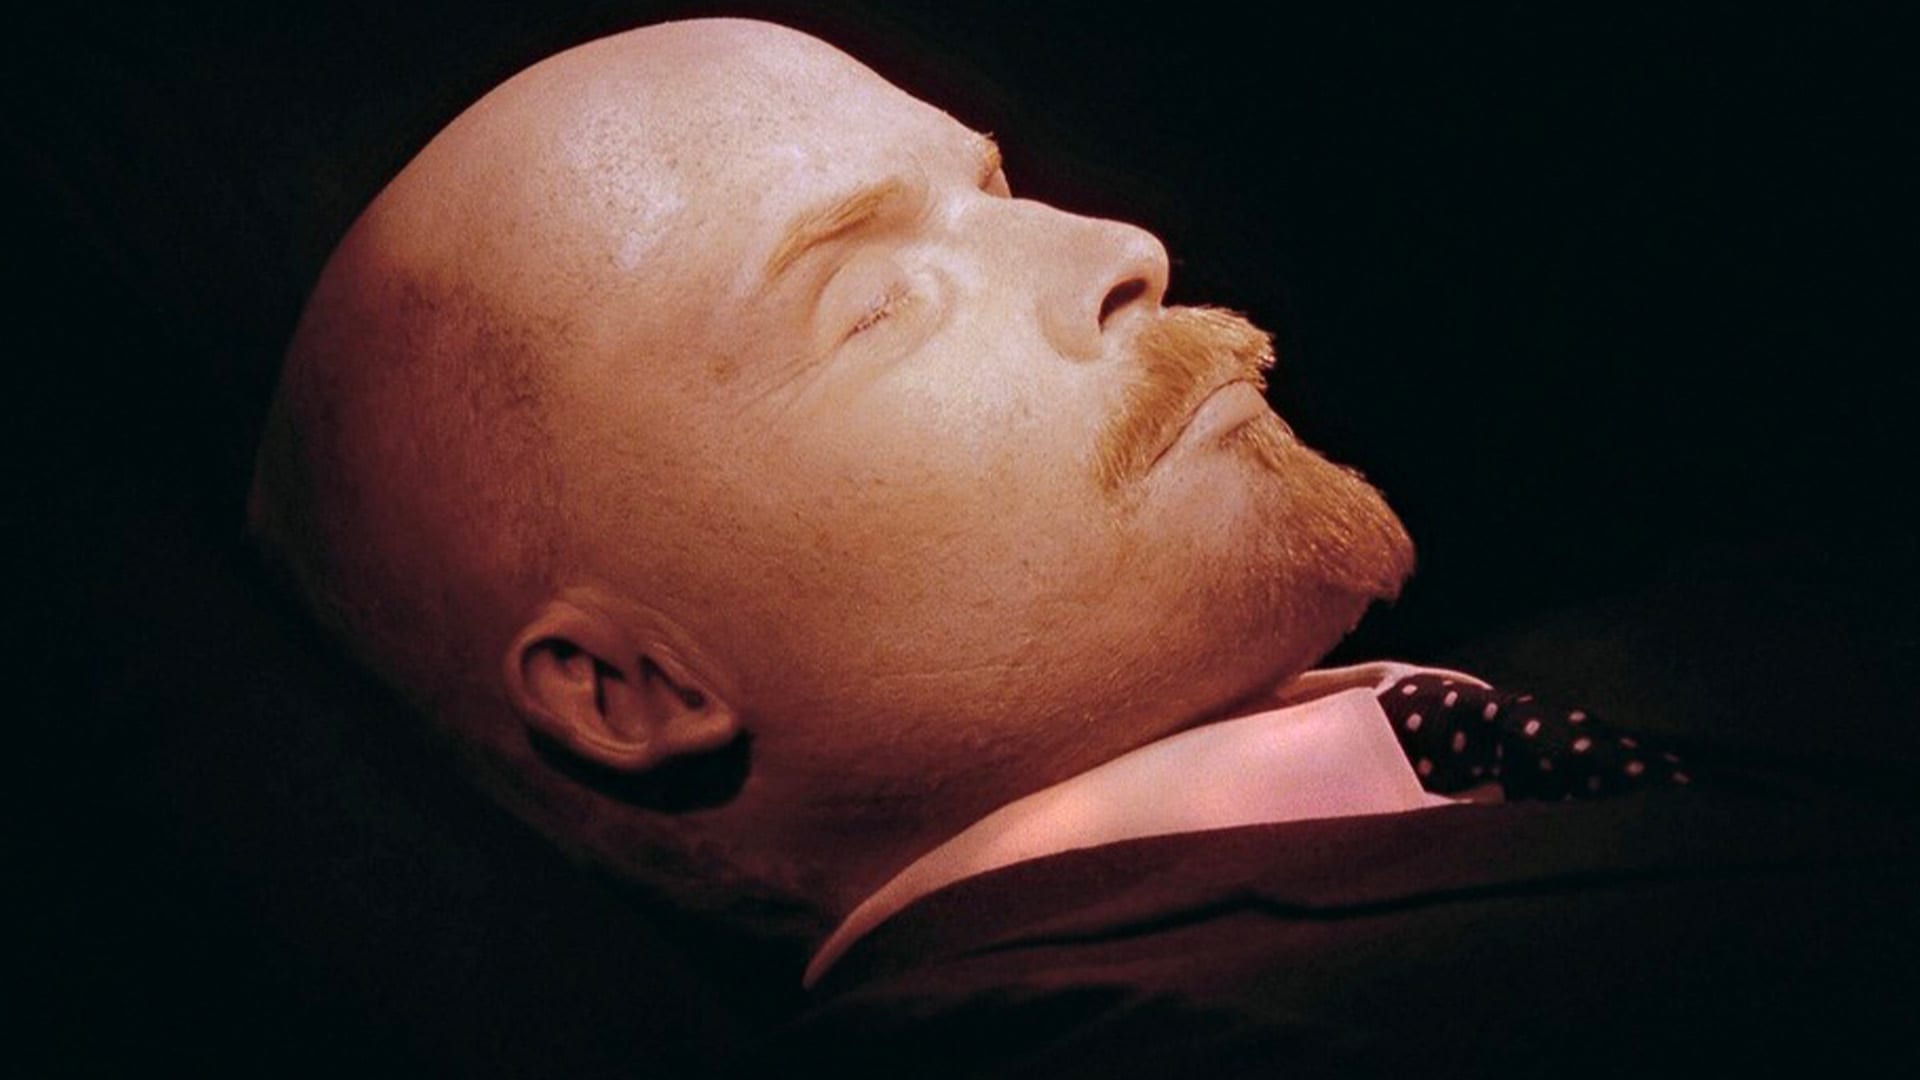 Vzácný snímek balzamovaného těla V. I. Lenina vznikl v roce 1991